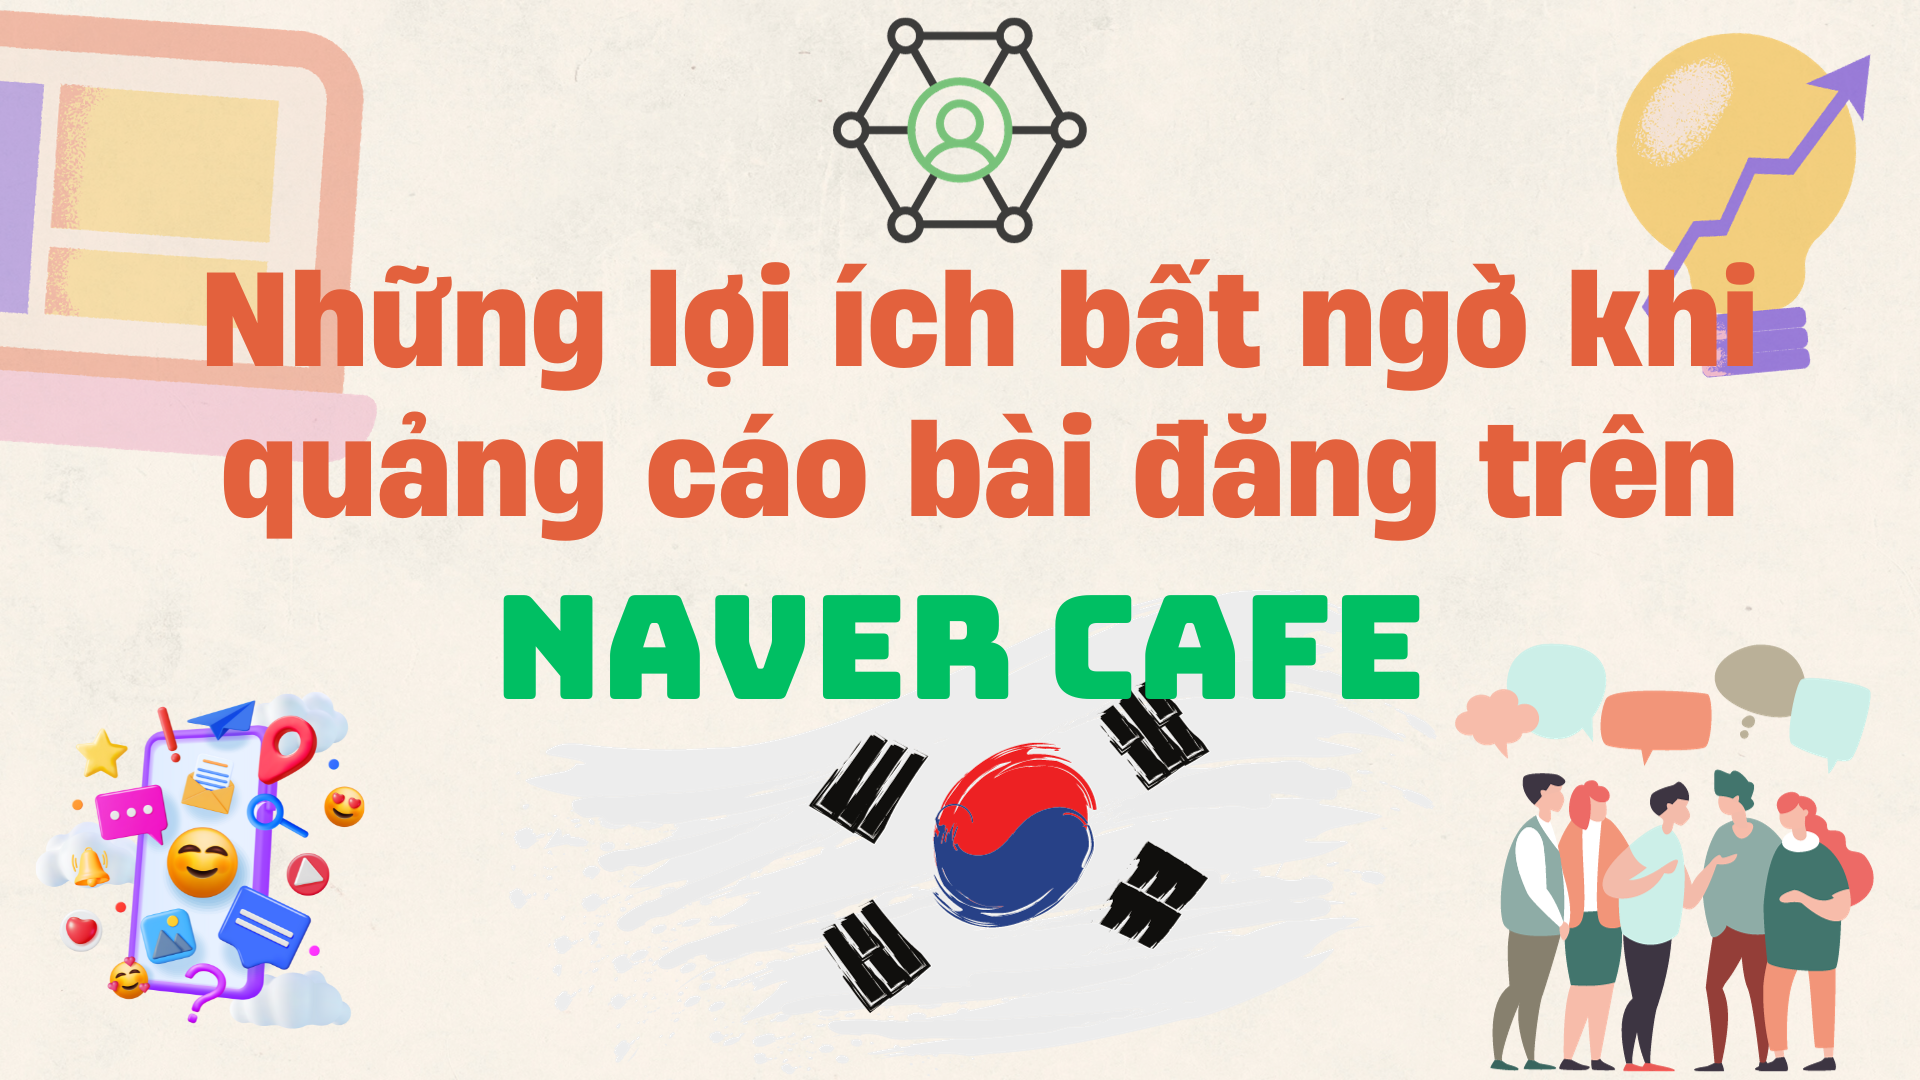 Lợi ích bất ngờ của hình thức quảng cáo bài đăng trên Naver Cafe